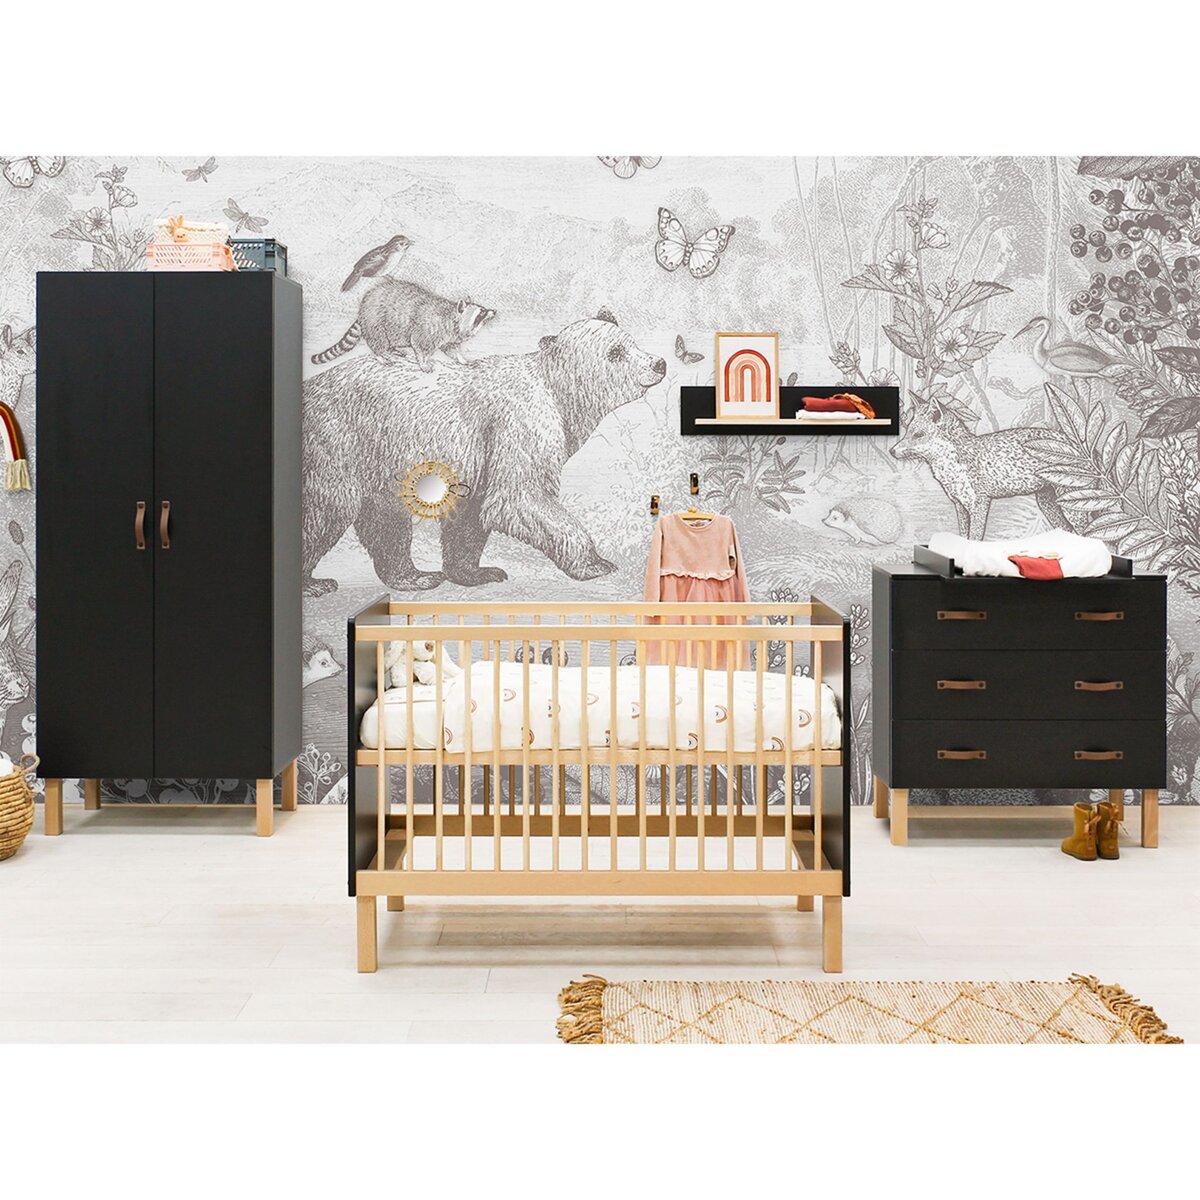 Chambre bébé bois complète lit évolutif commode armoire